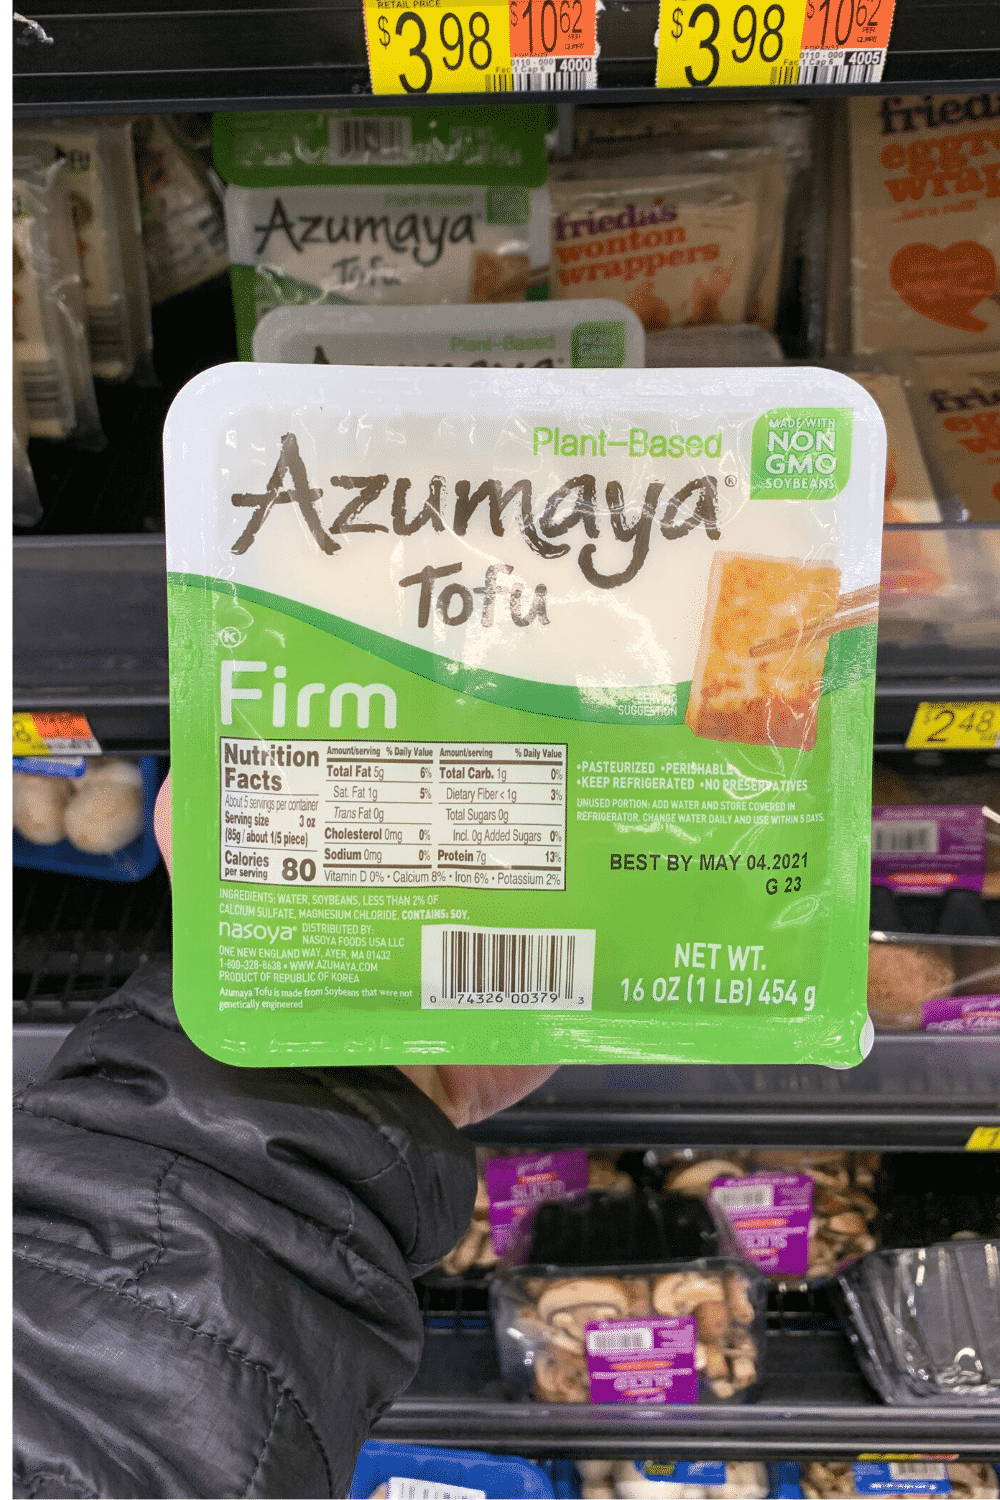 A hand holding Azumaya tofu.